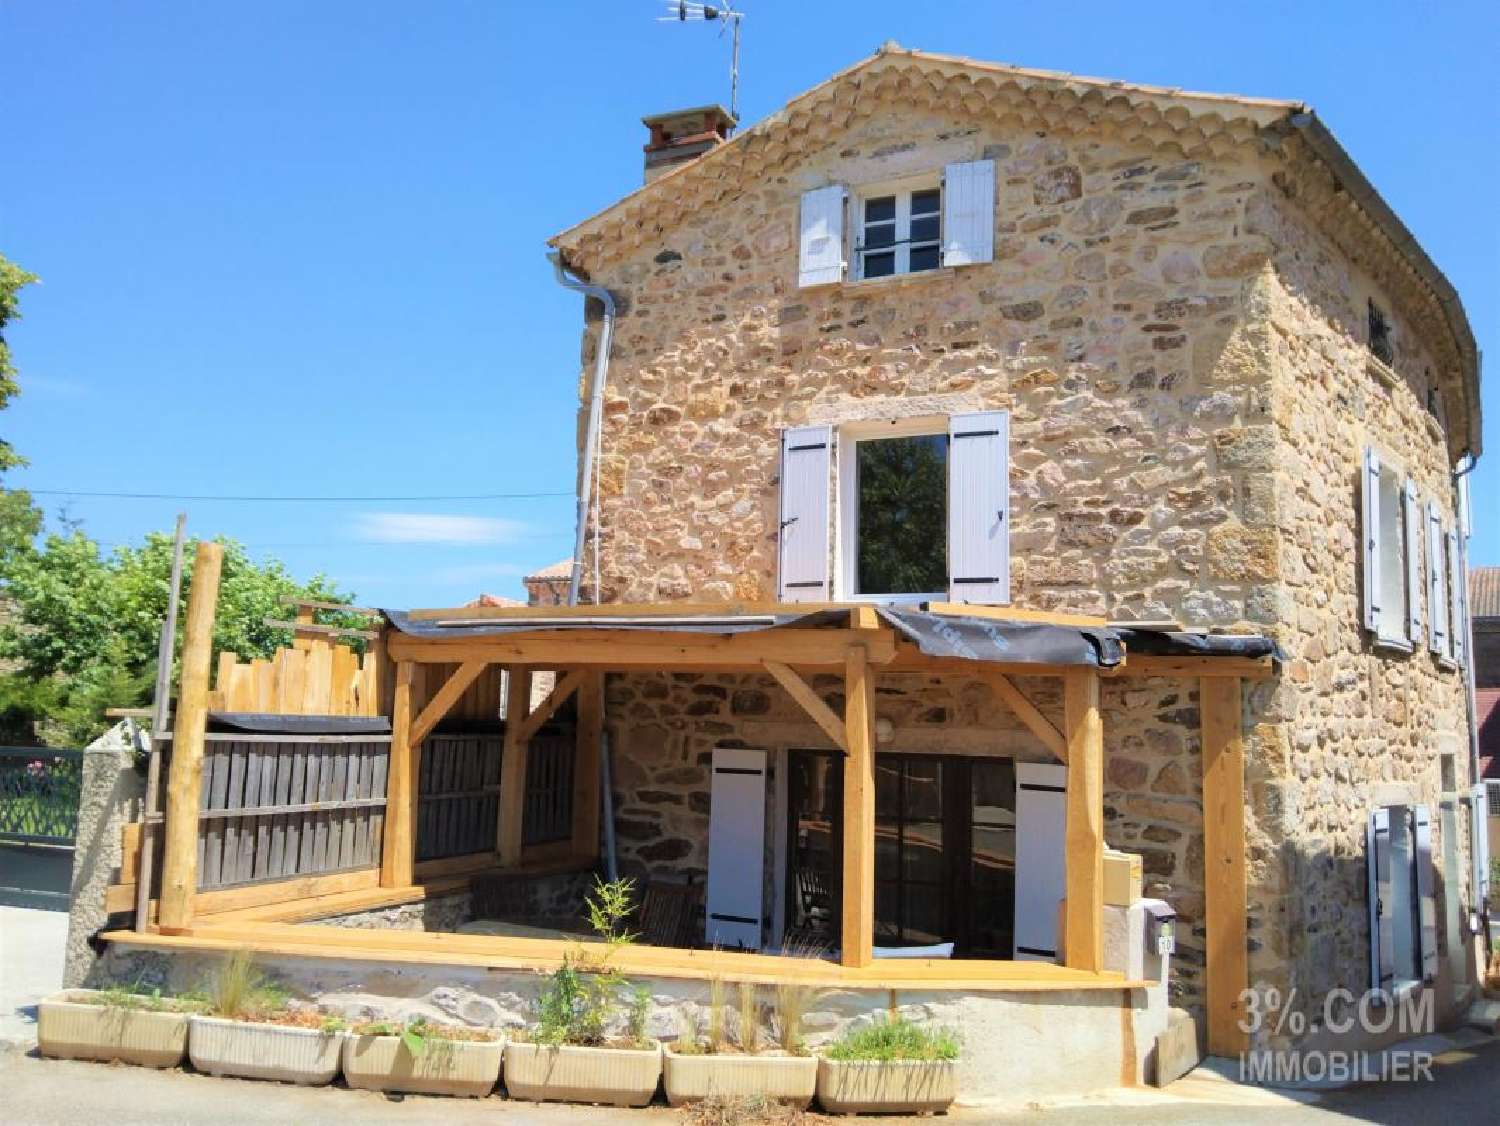  for sale village house Alboussière Ardèche 1